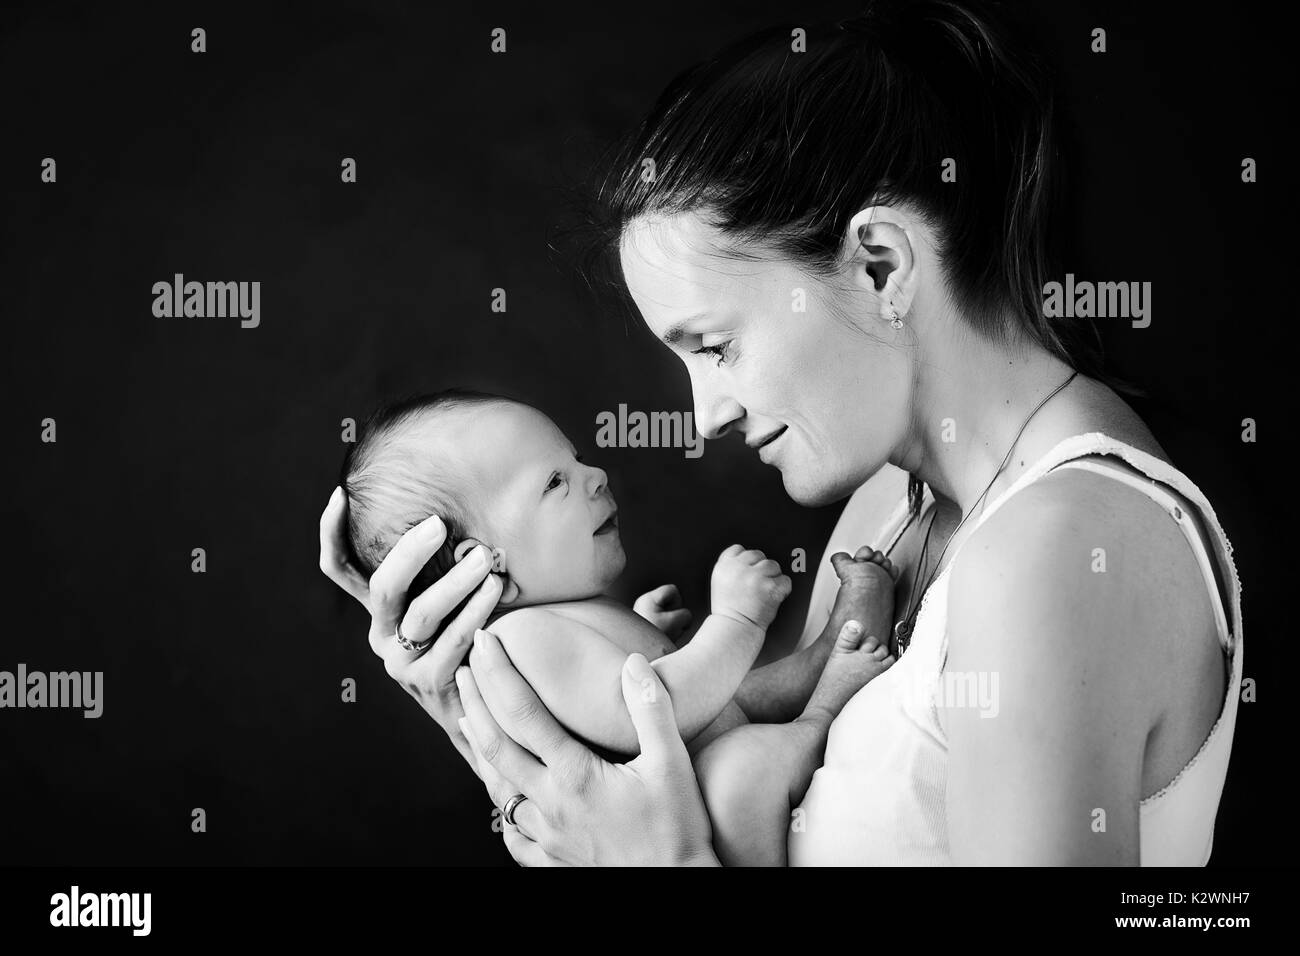 Junge Mutter, küsste und umarmte ihre neugeborenen Jungen, zarten, Fürsorge, Liebe, positive Emotionen. Isolierte Bild, schwarzer Hintergrund, Mutterschaft Konzept, f Stockfoto